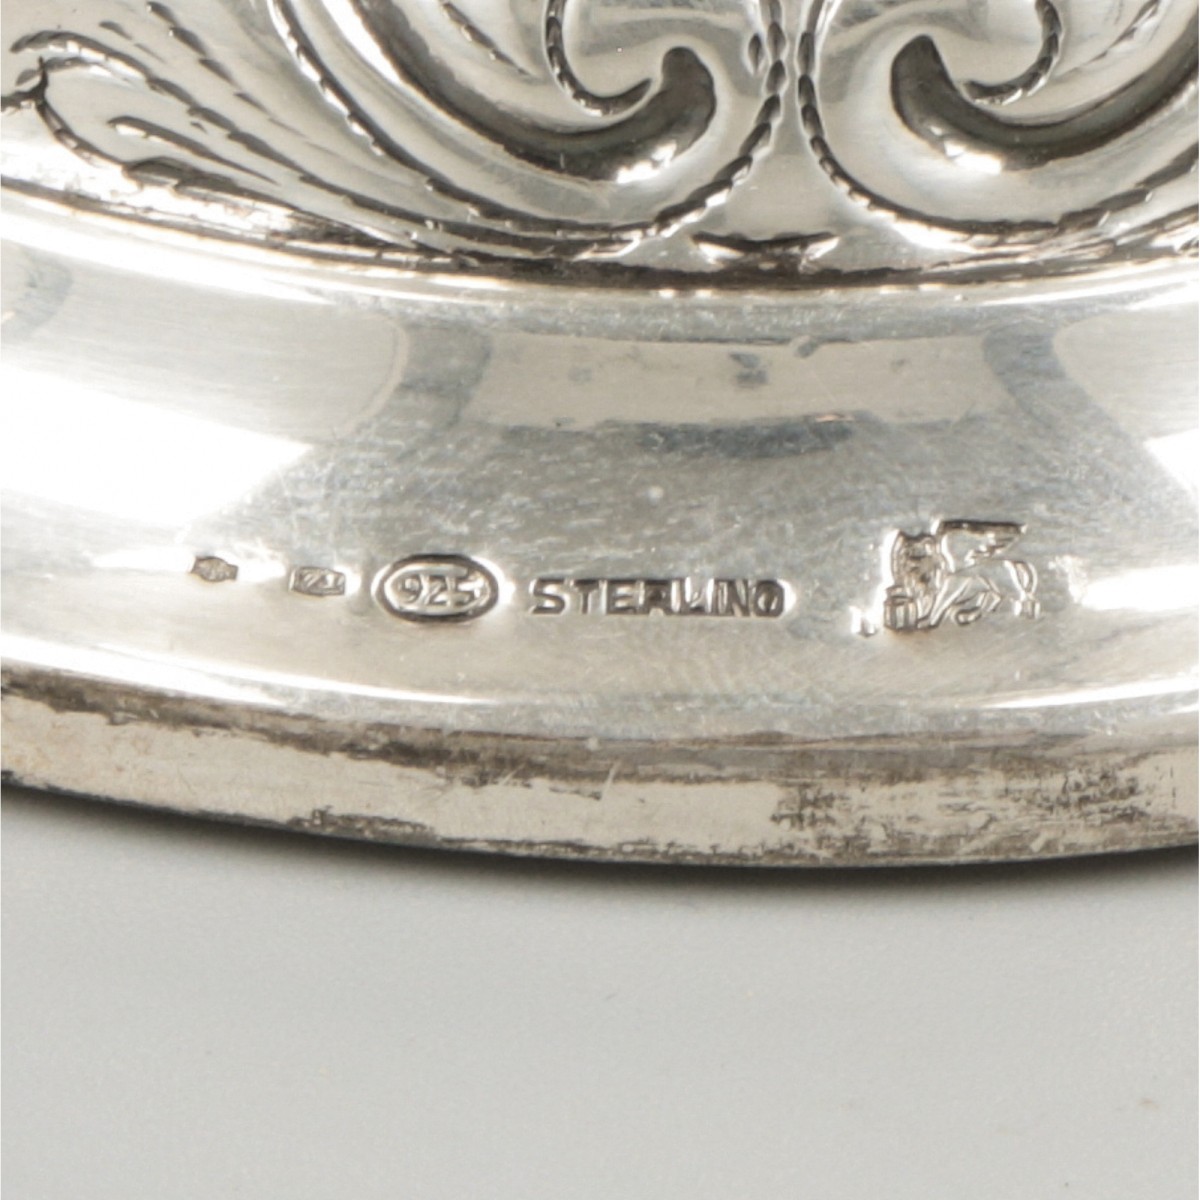 Showpiece vase silver. - Image 7 of 7